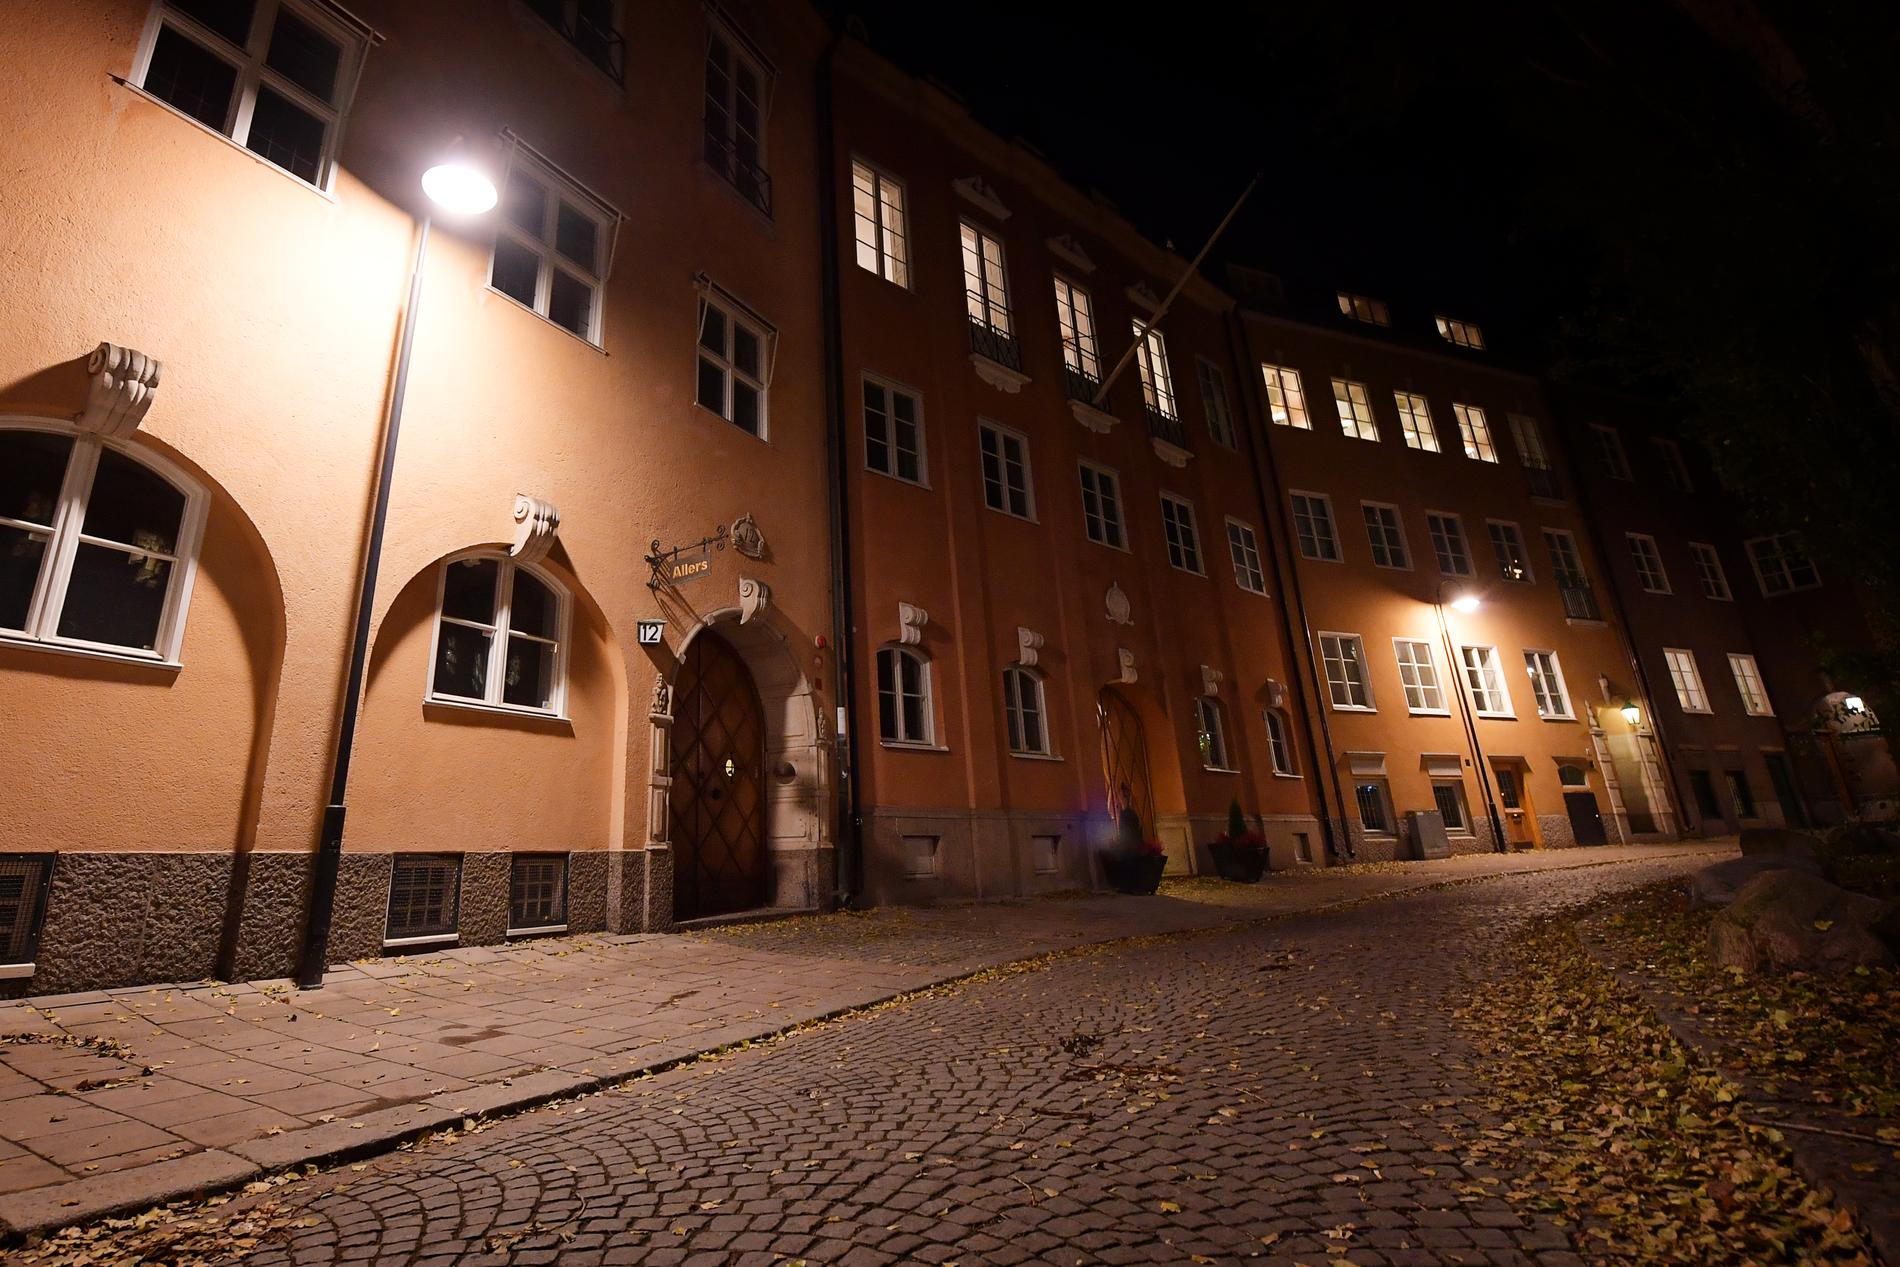 Fastigheten på Östermalm i Stockholm hyste tidigare Allers förlag